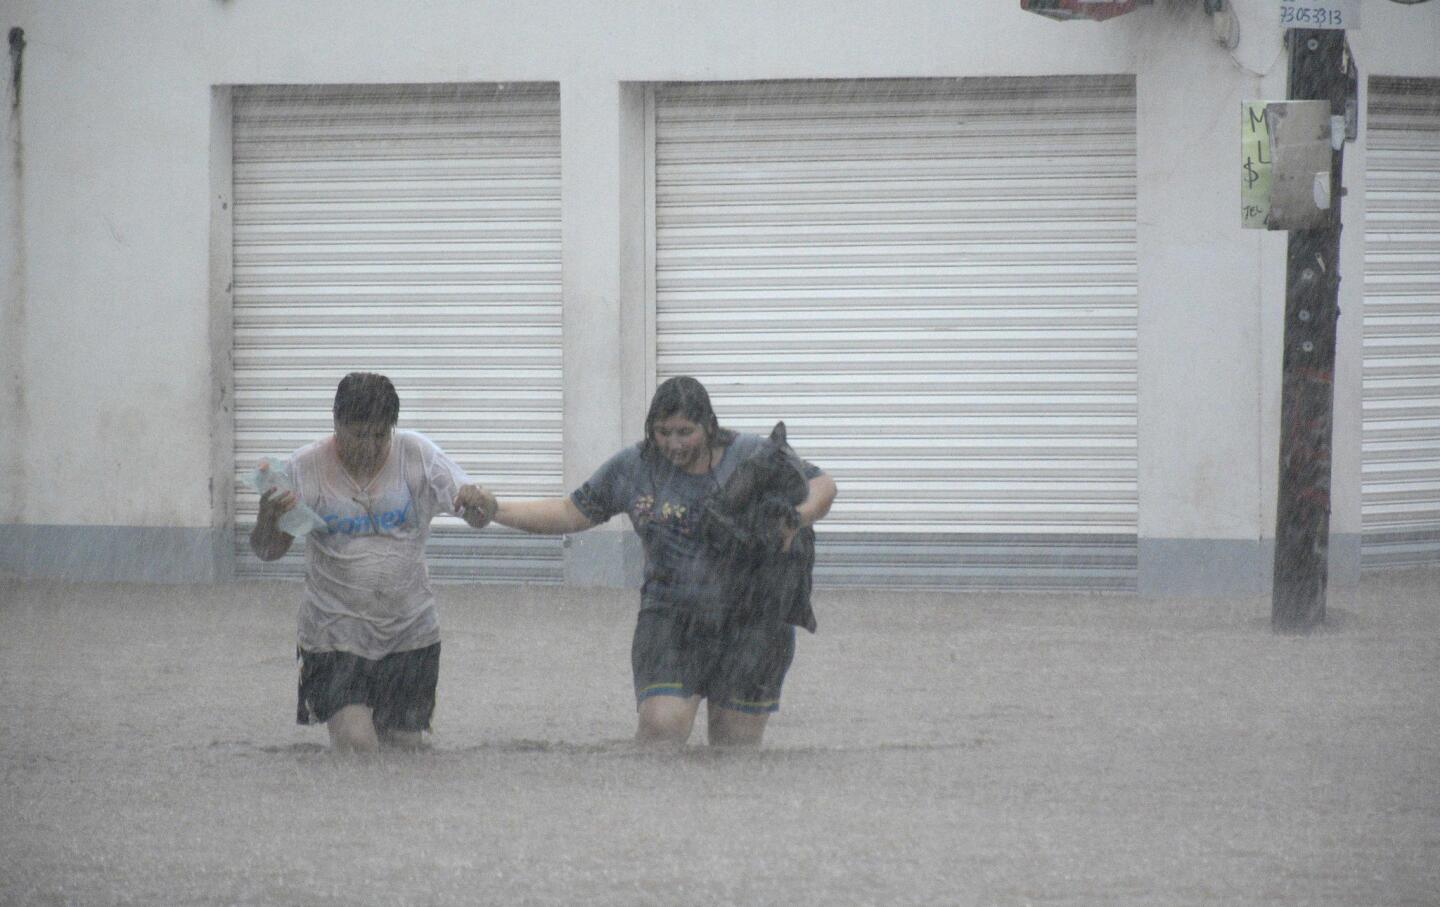 Inundaciones en Sinaloa